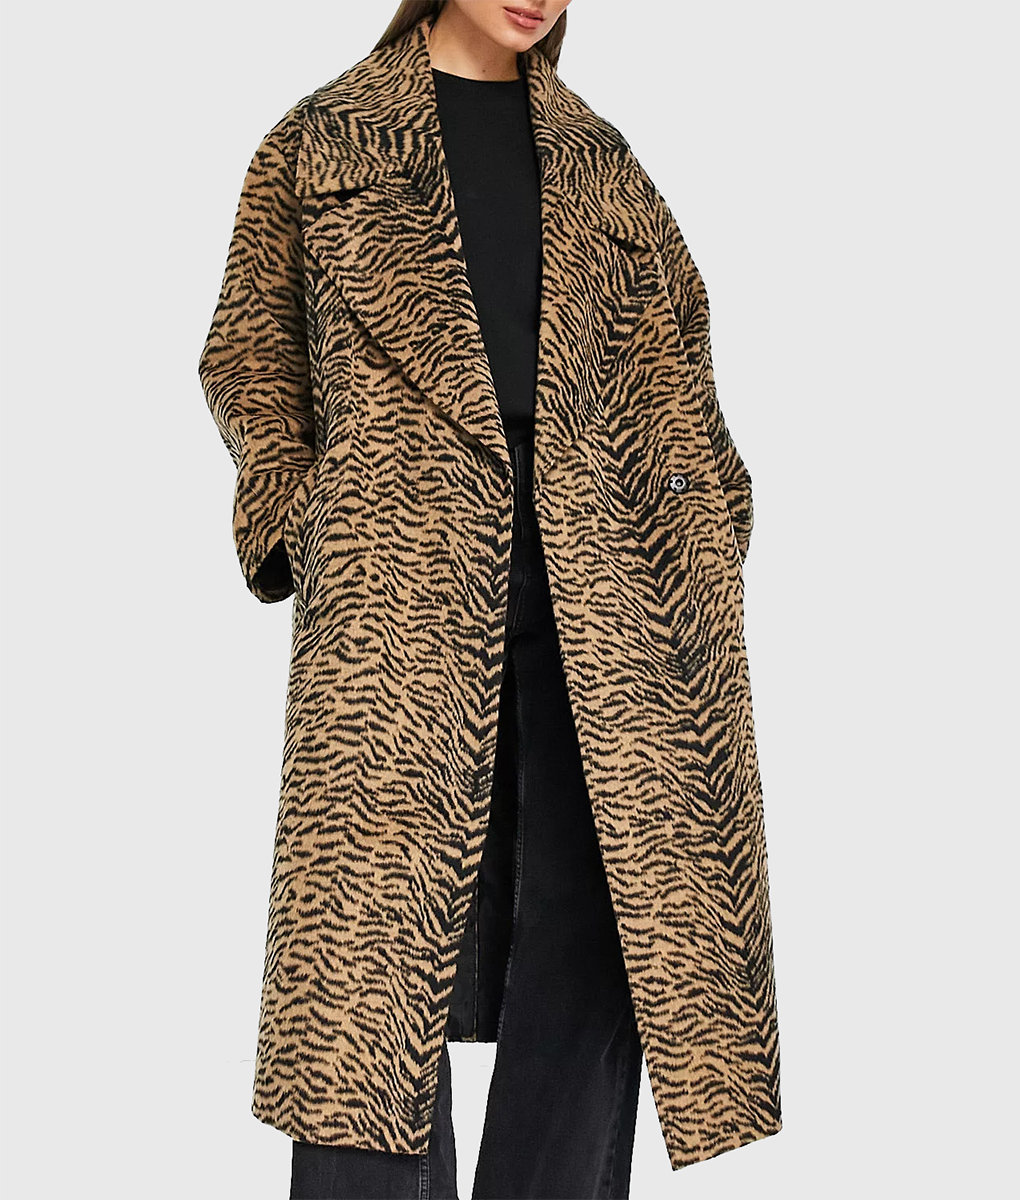 Nicola Coughlan Big Mood Tiger Print Coat (5)